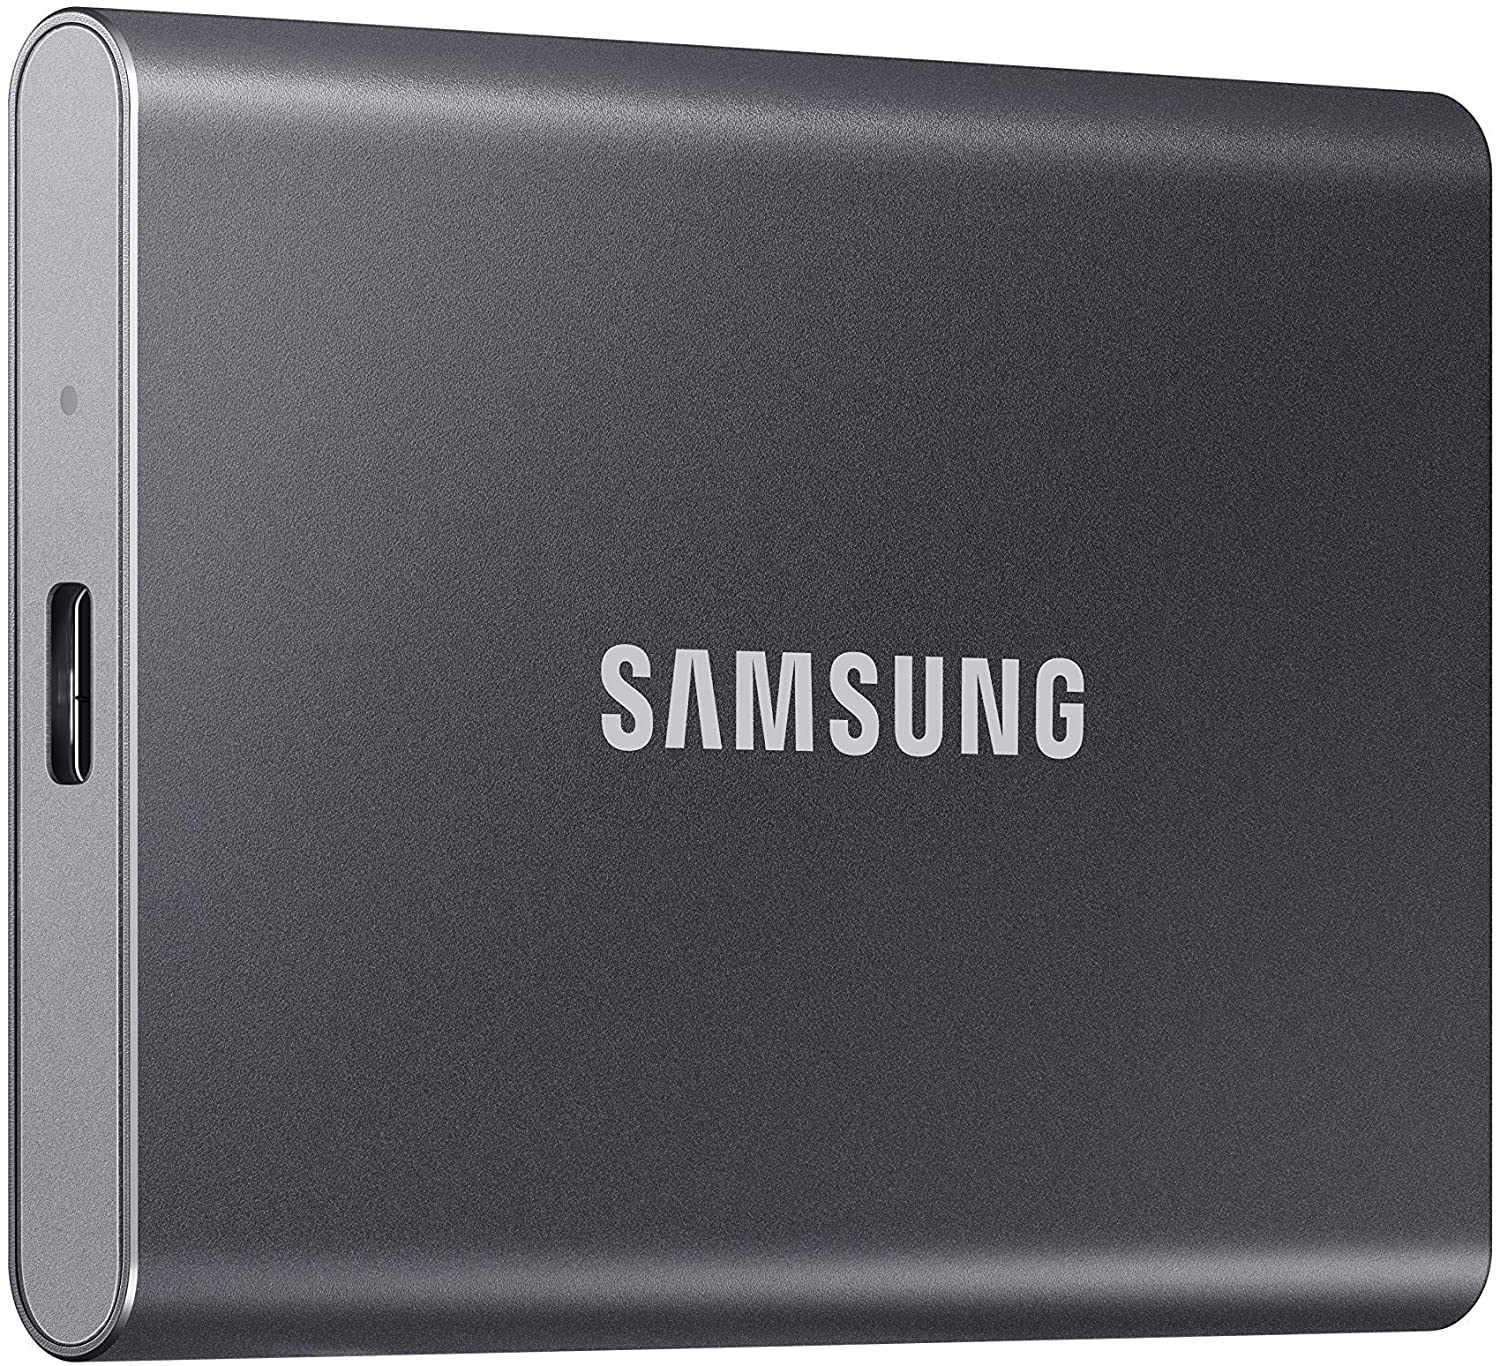 SSD Esterno da 500 GB in offerta speciale su Amazon grazie ai 7 Days of Samsung